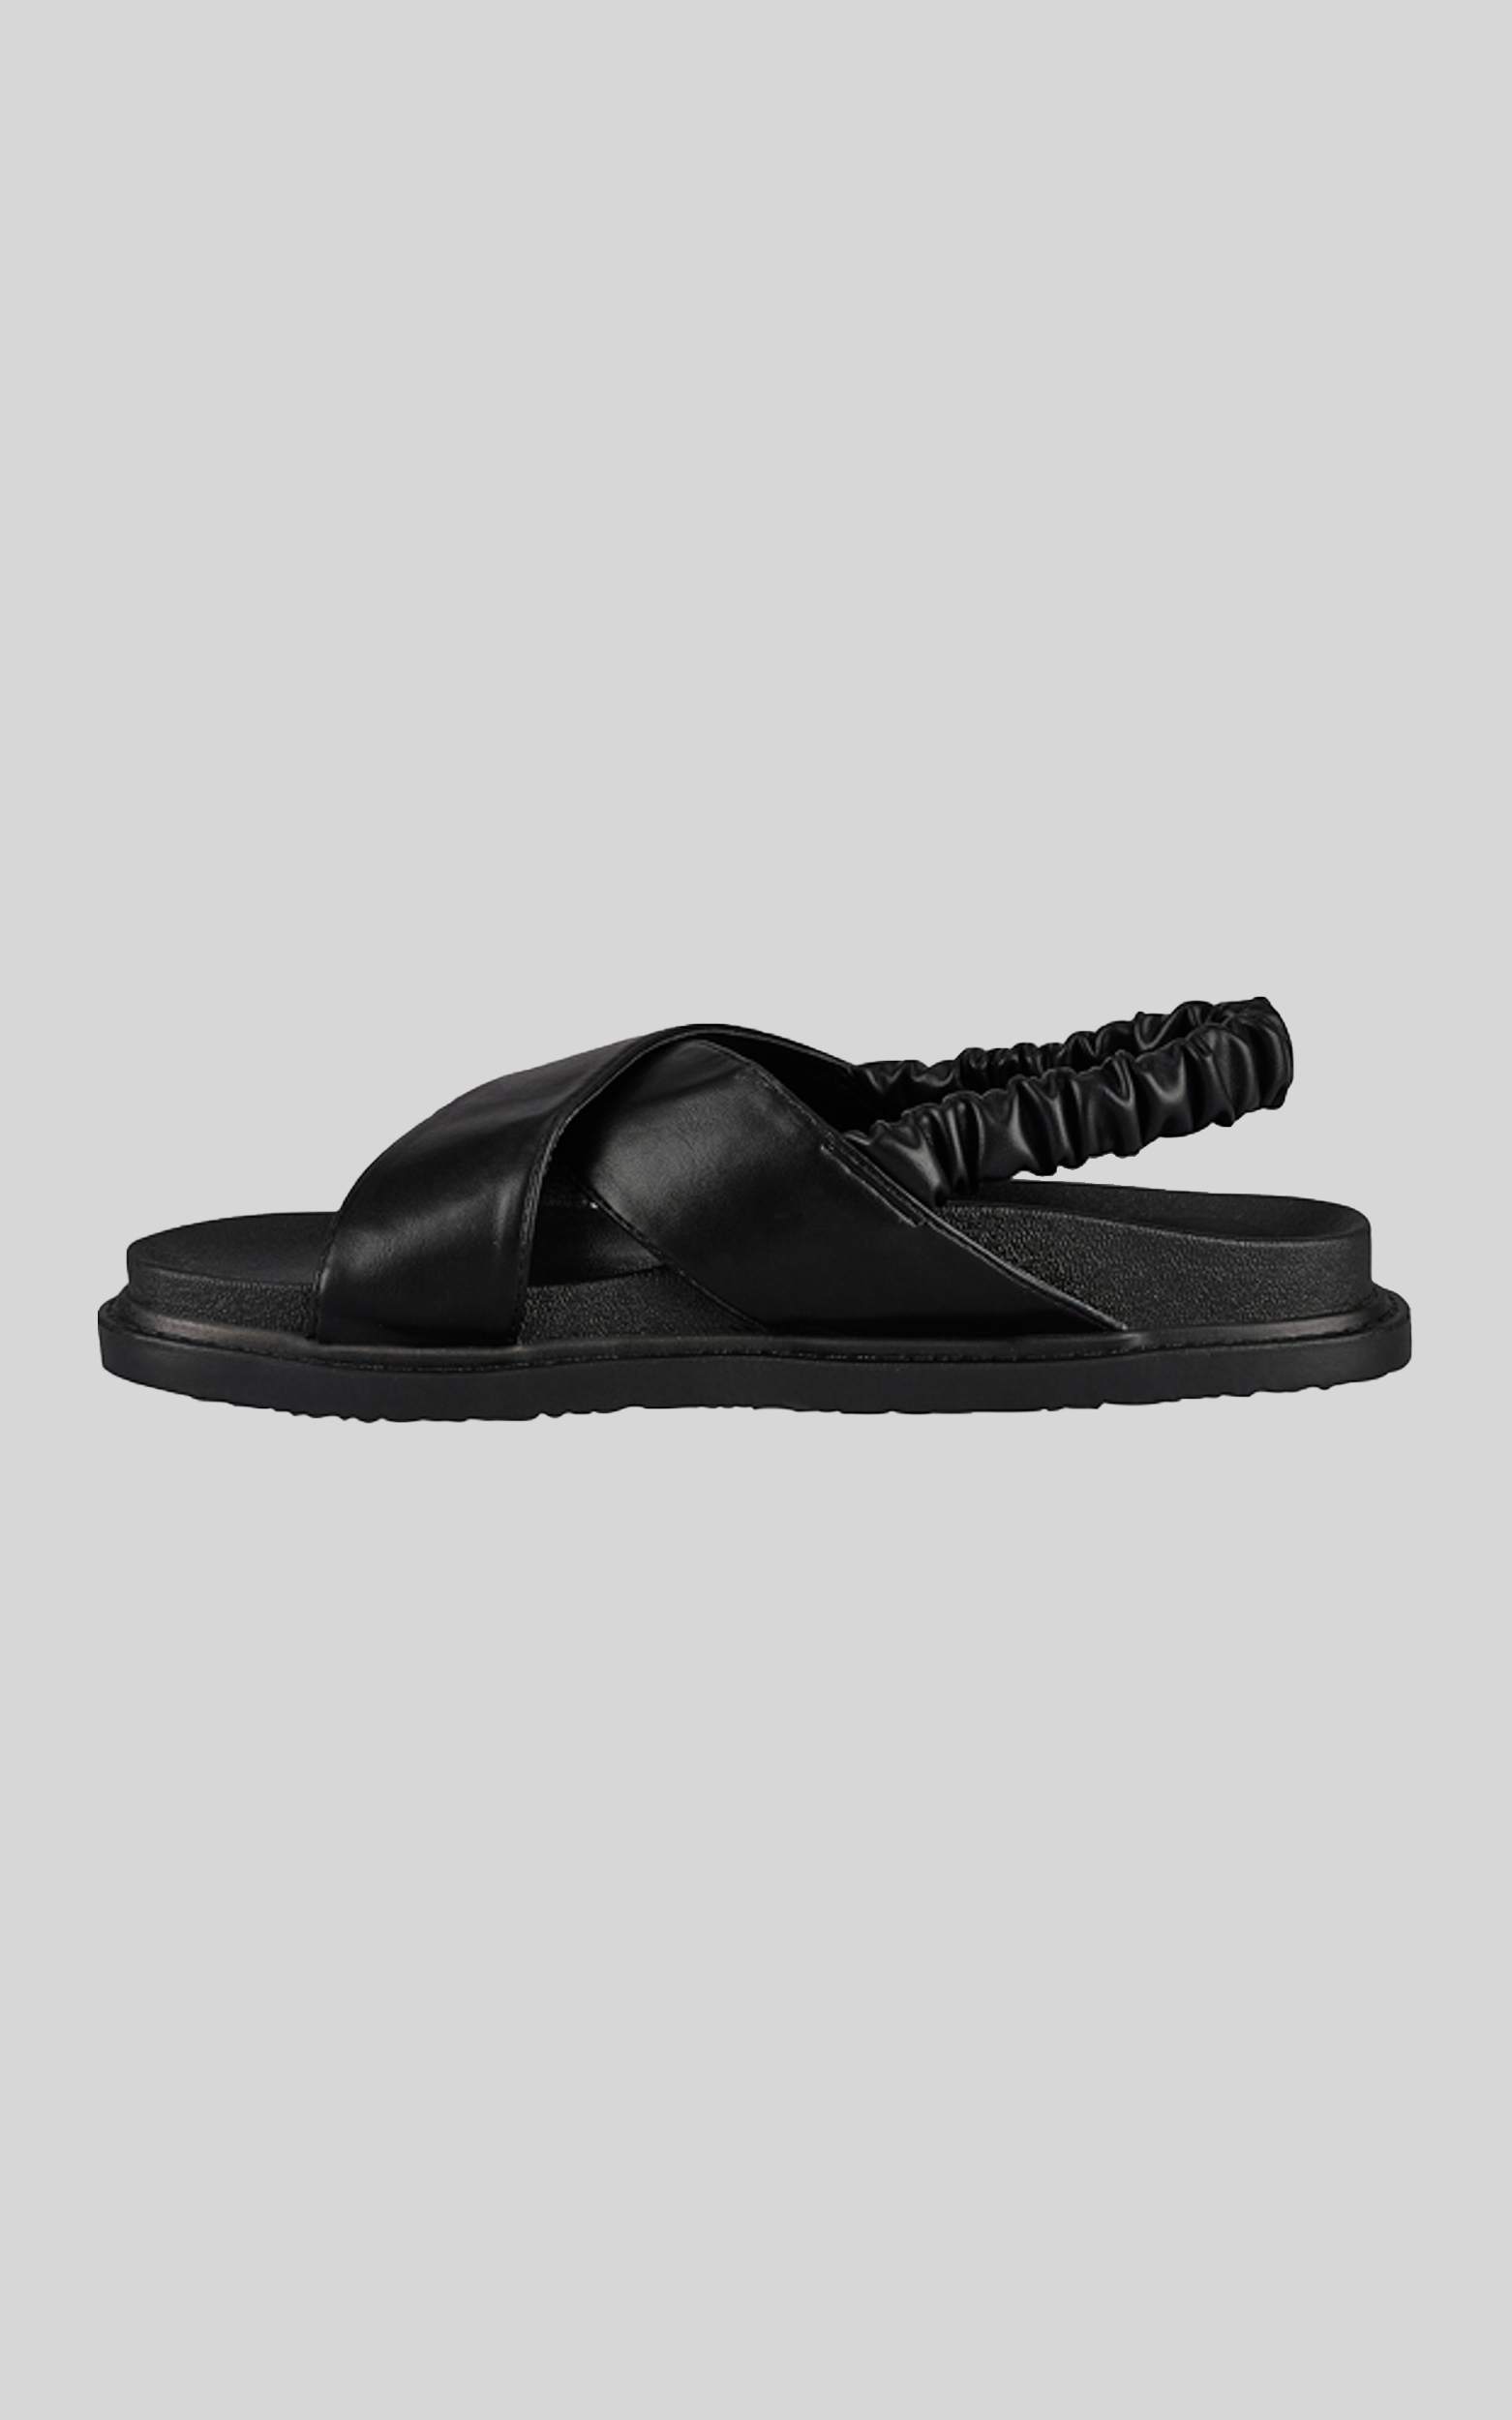 St Sana - Tatum Sandals in Black - 06, BLK1, hi-res image number null